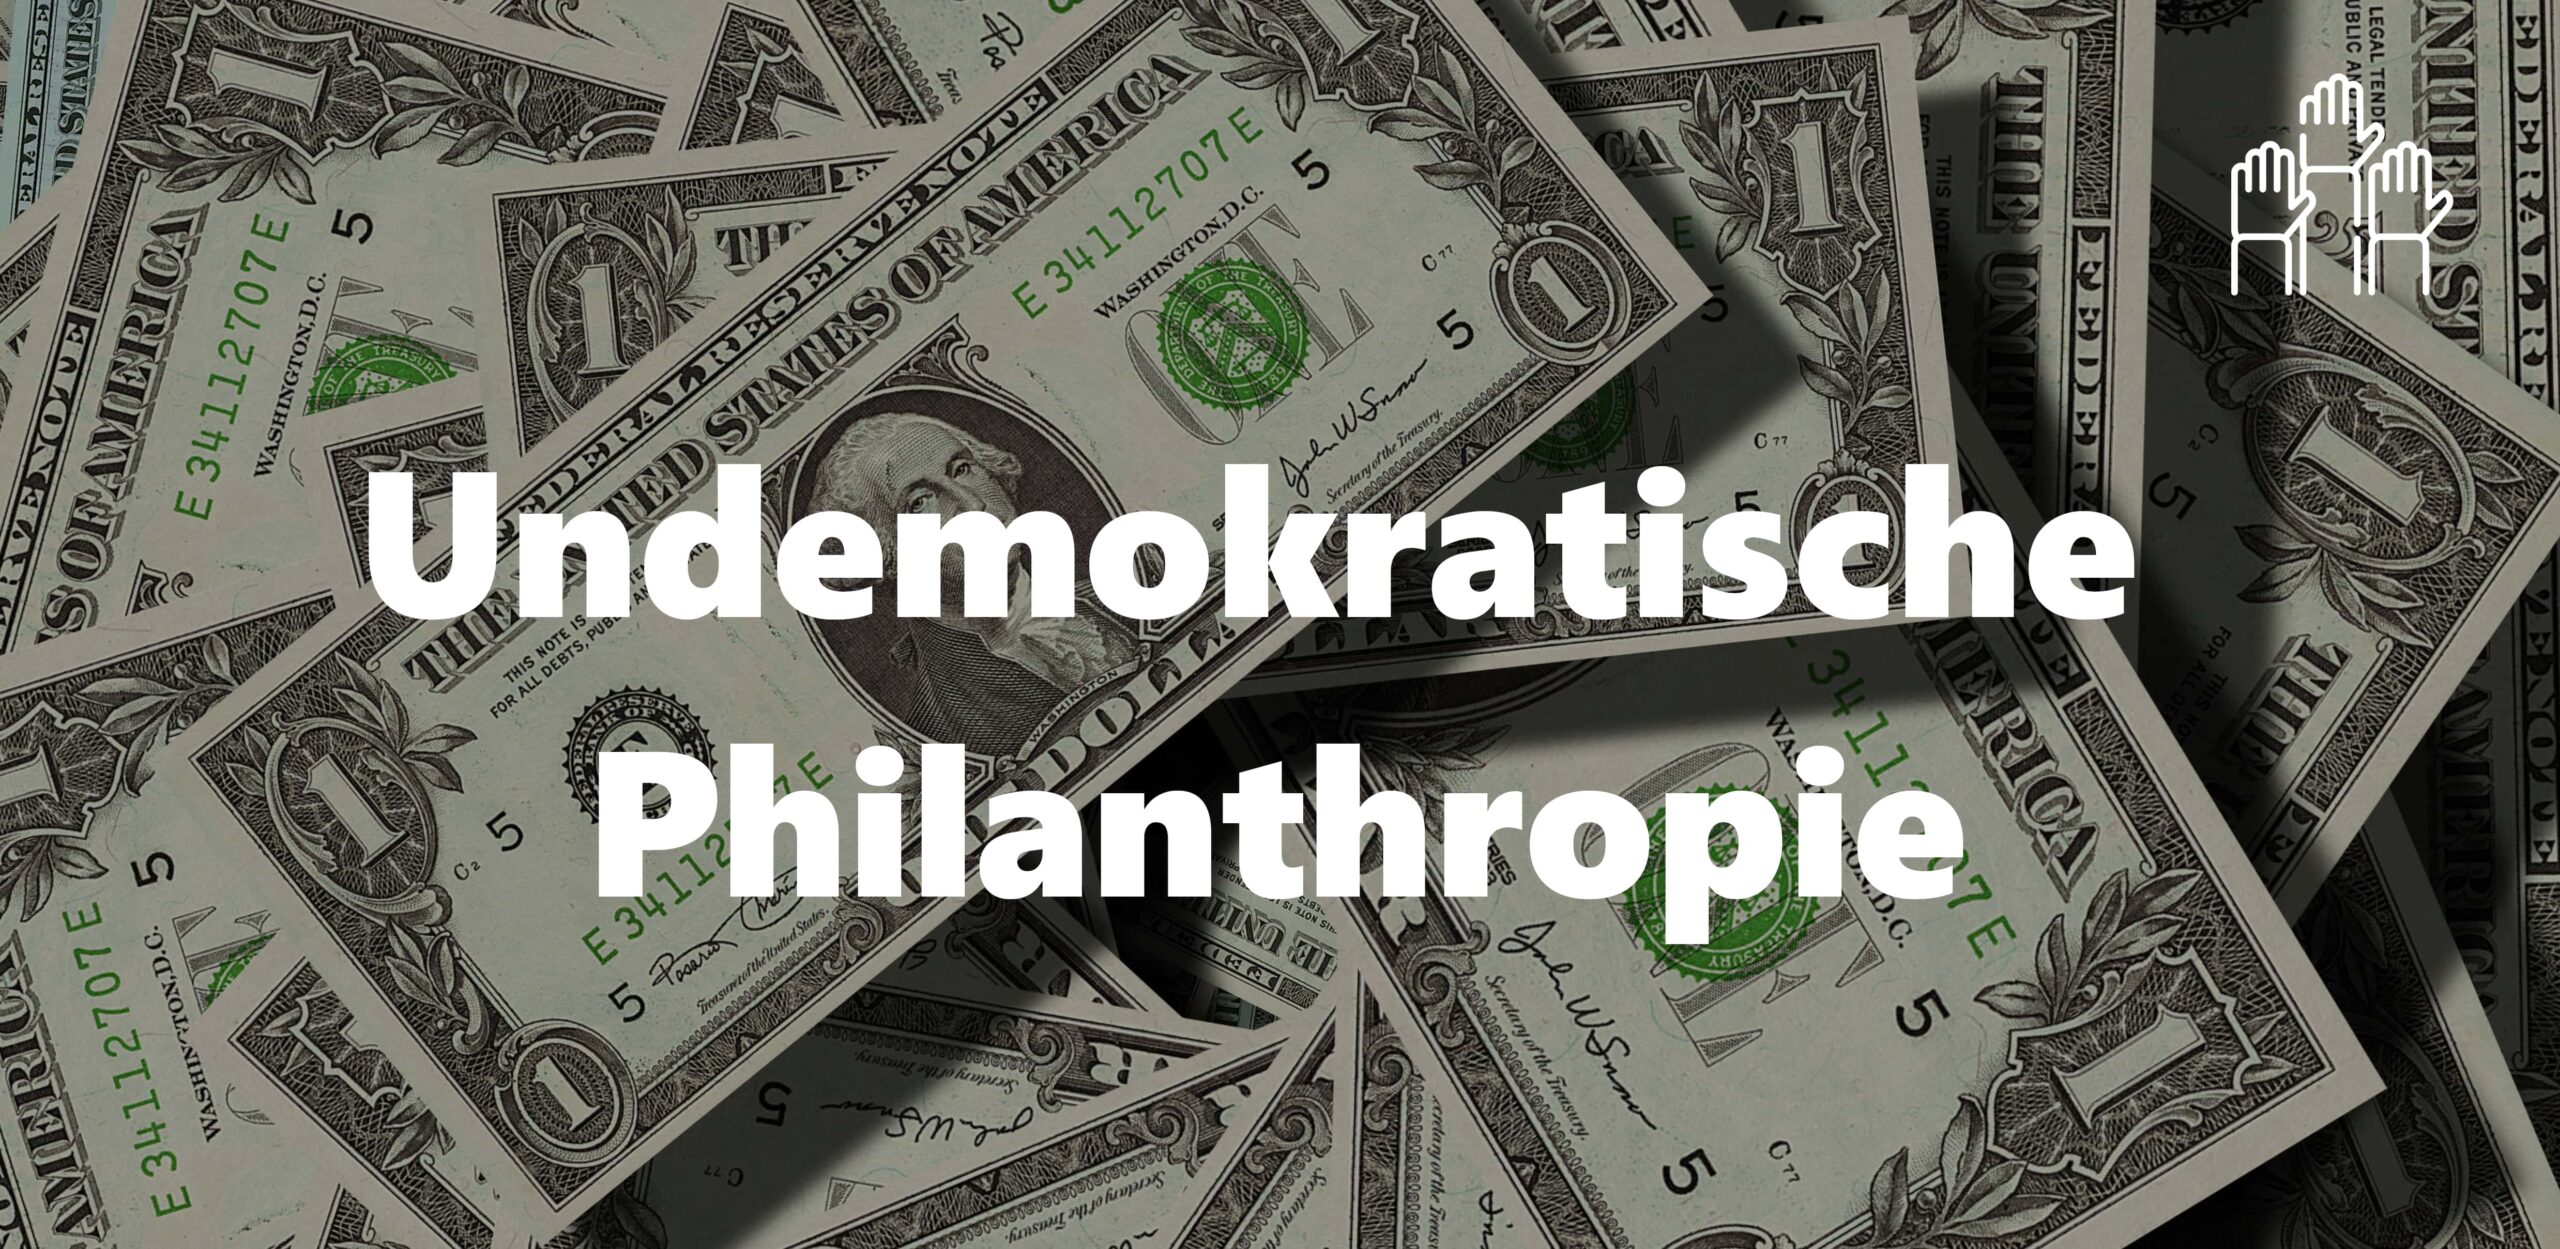 Die demokratiefeindliche Ideologie der Philanthropie